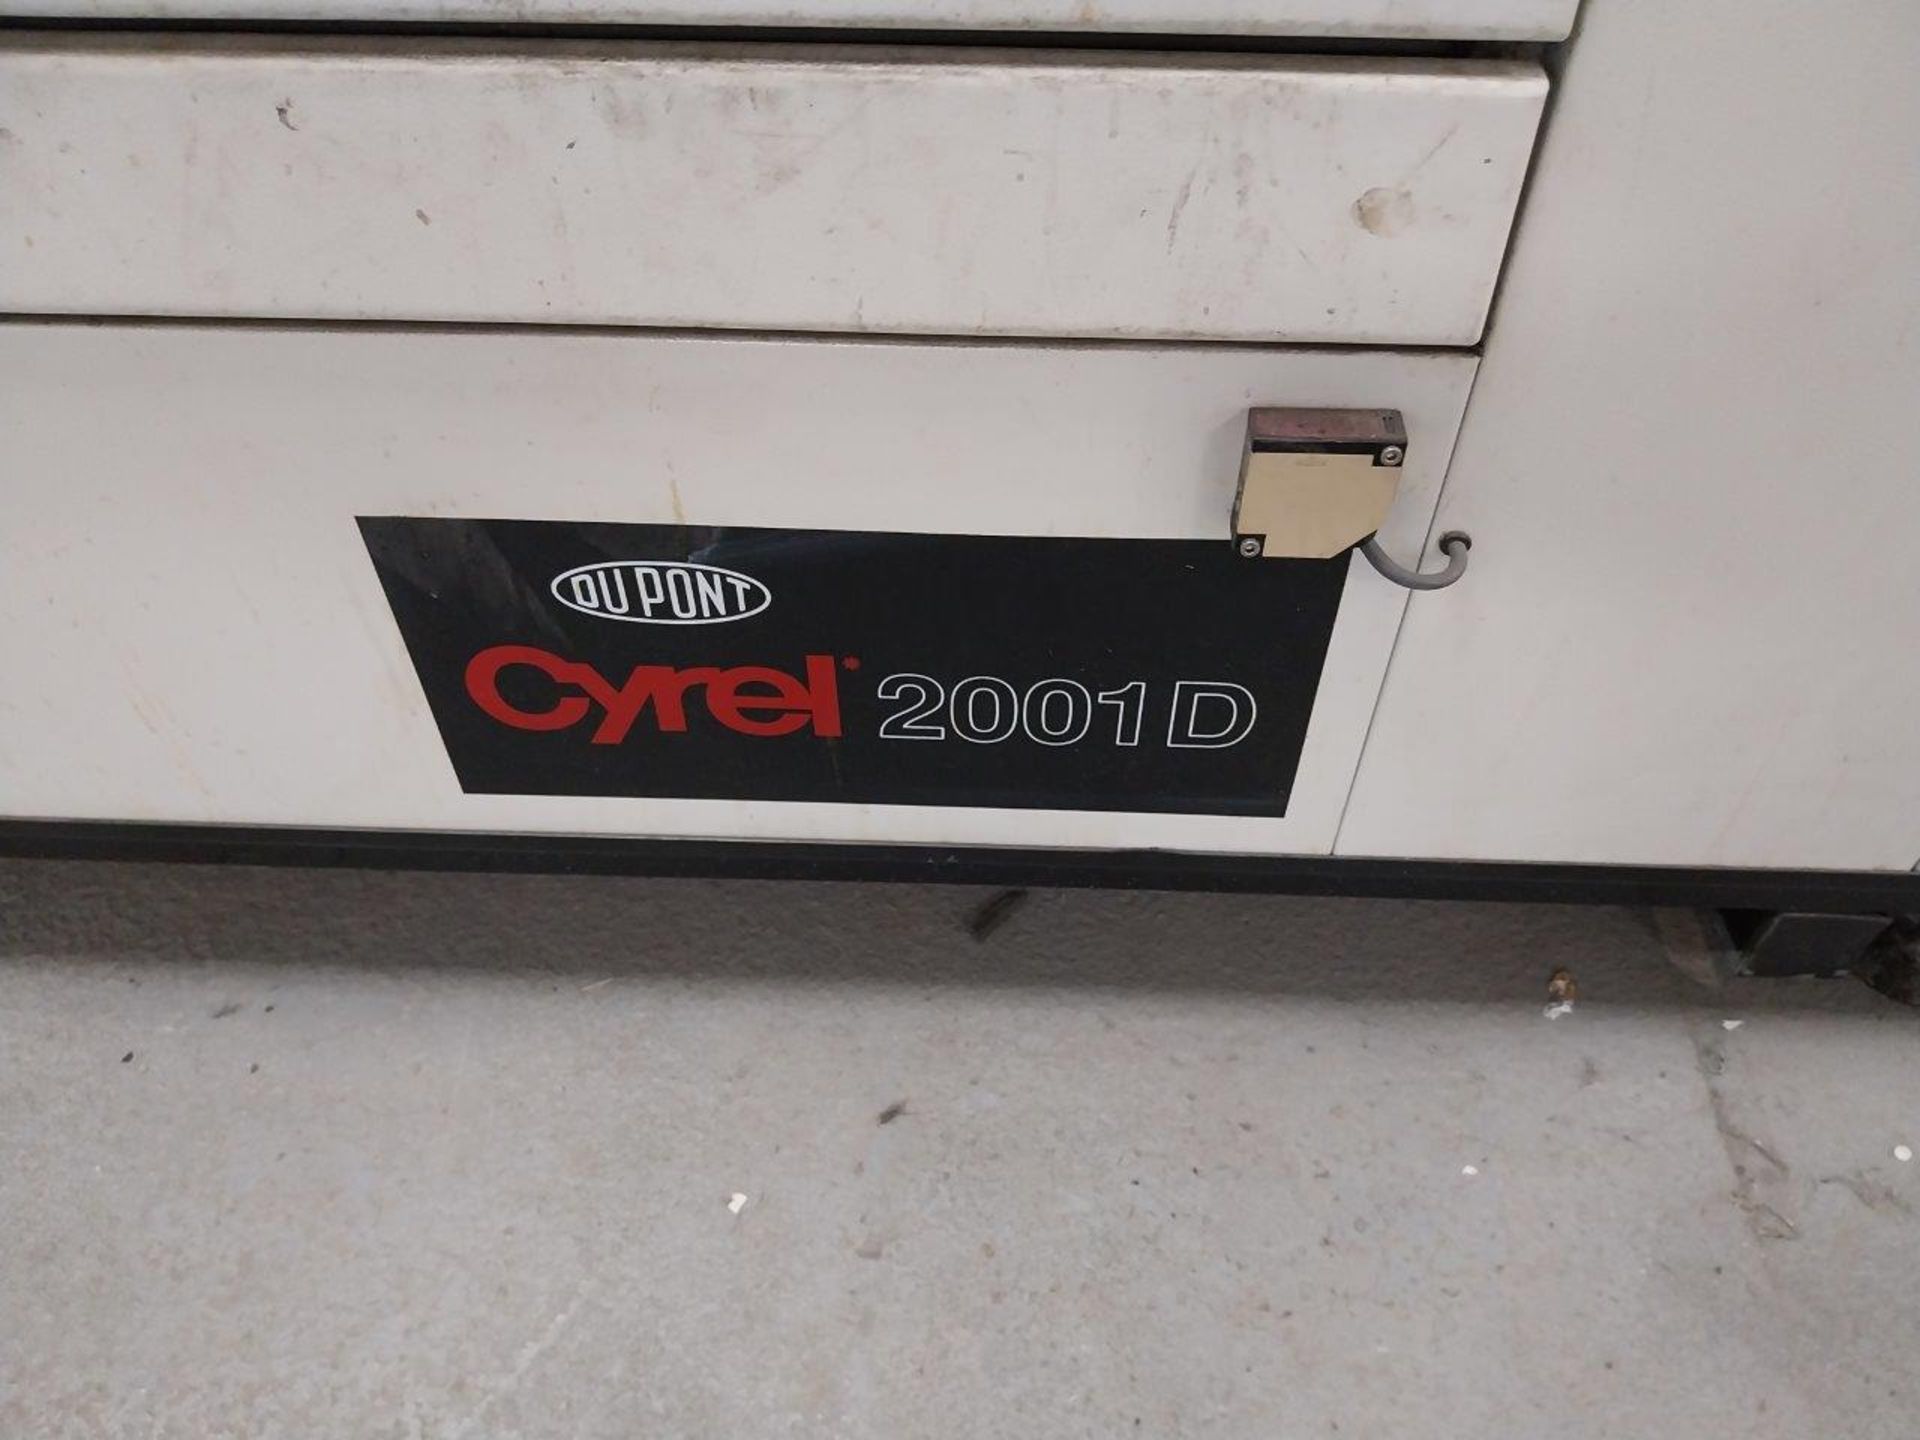 Dupont Cyrel 2001D 5 drawer dryer, Serial number 93171, Mfd 12/1999 - Image 4 of 5